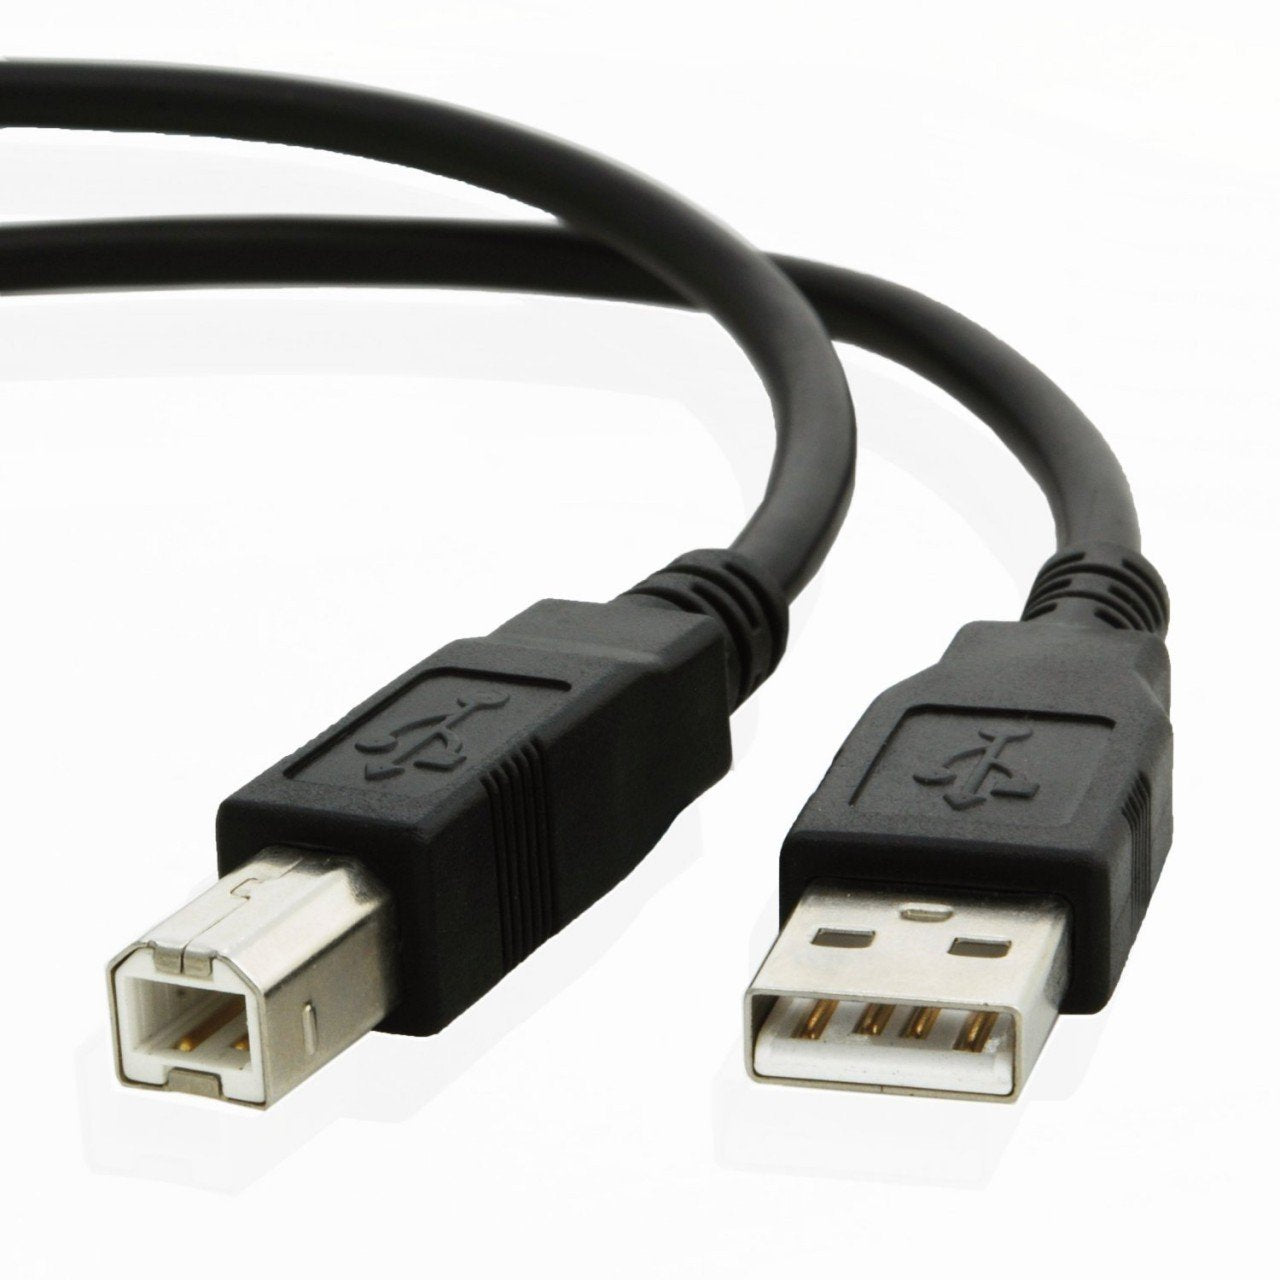 USB cable for Hp LASERJET ENTERPRISE M632fht